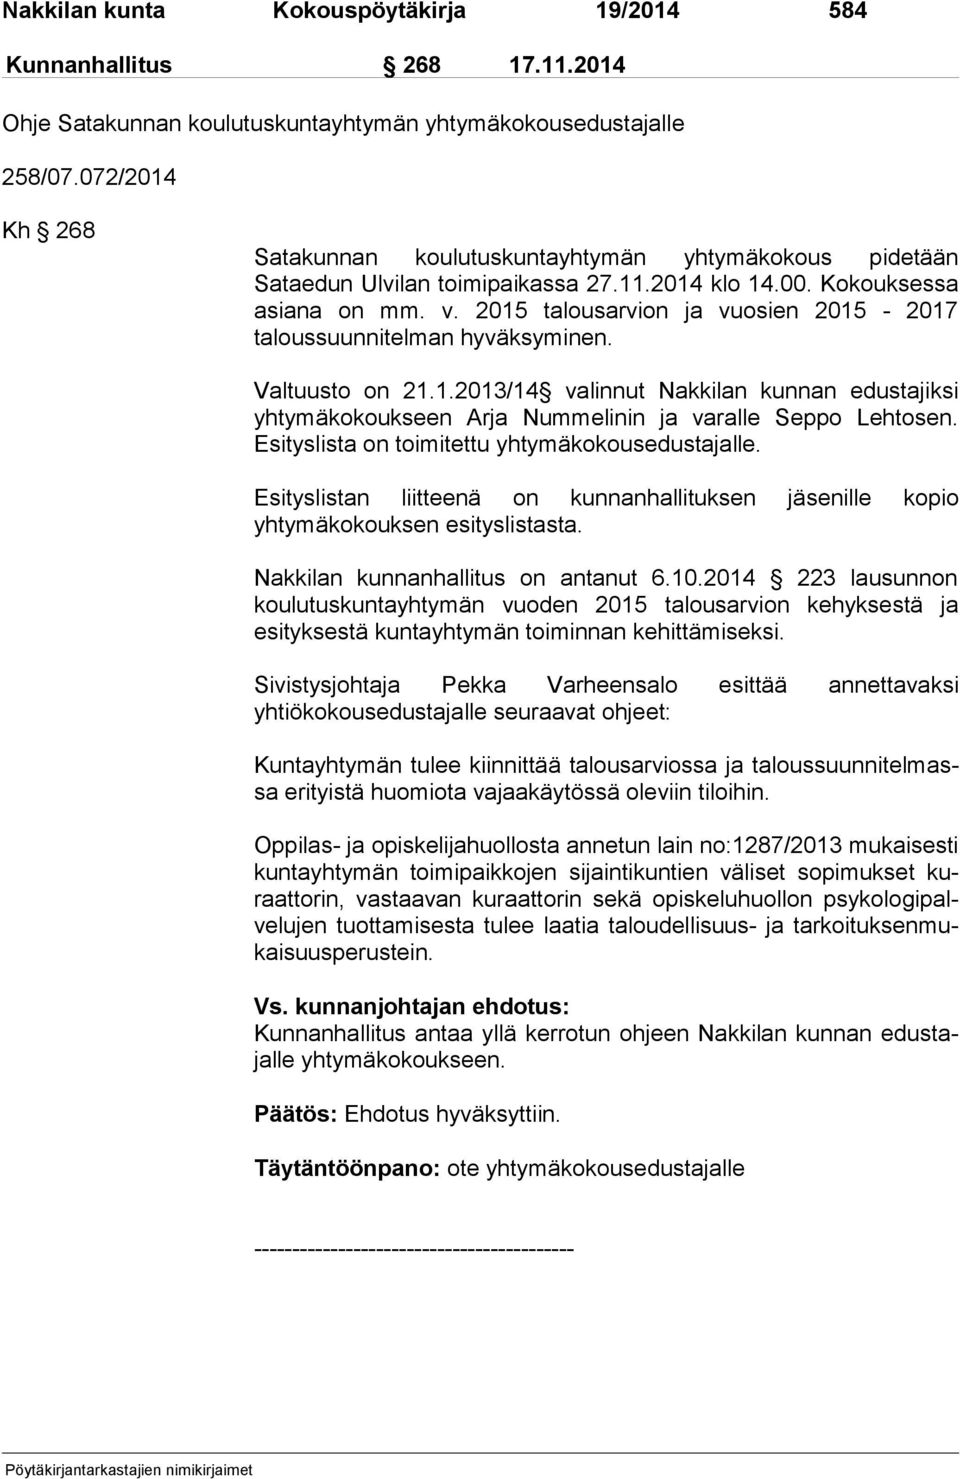 2015 talousarvion ja vuosien 2015-2017 taloussuunnitelman hyväksyminen. Valtuusto on 21.1.2013/14 valinnut Nakkilan kunnan edustajiksi yhtymäkokoukseen Arja Nummelinin ja varalle Seppo Lehtosen.